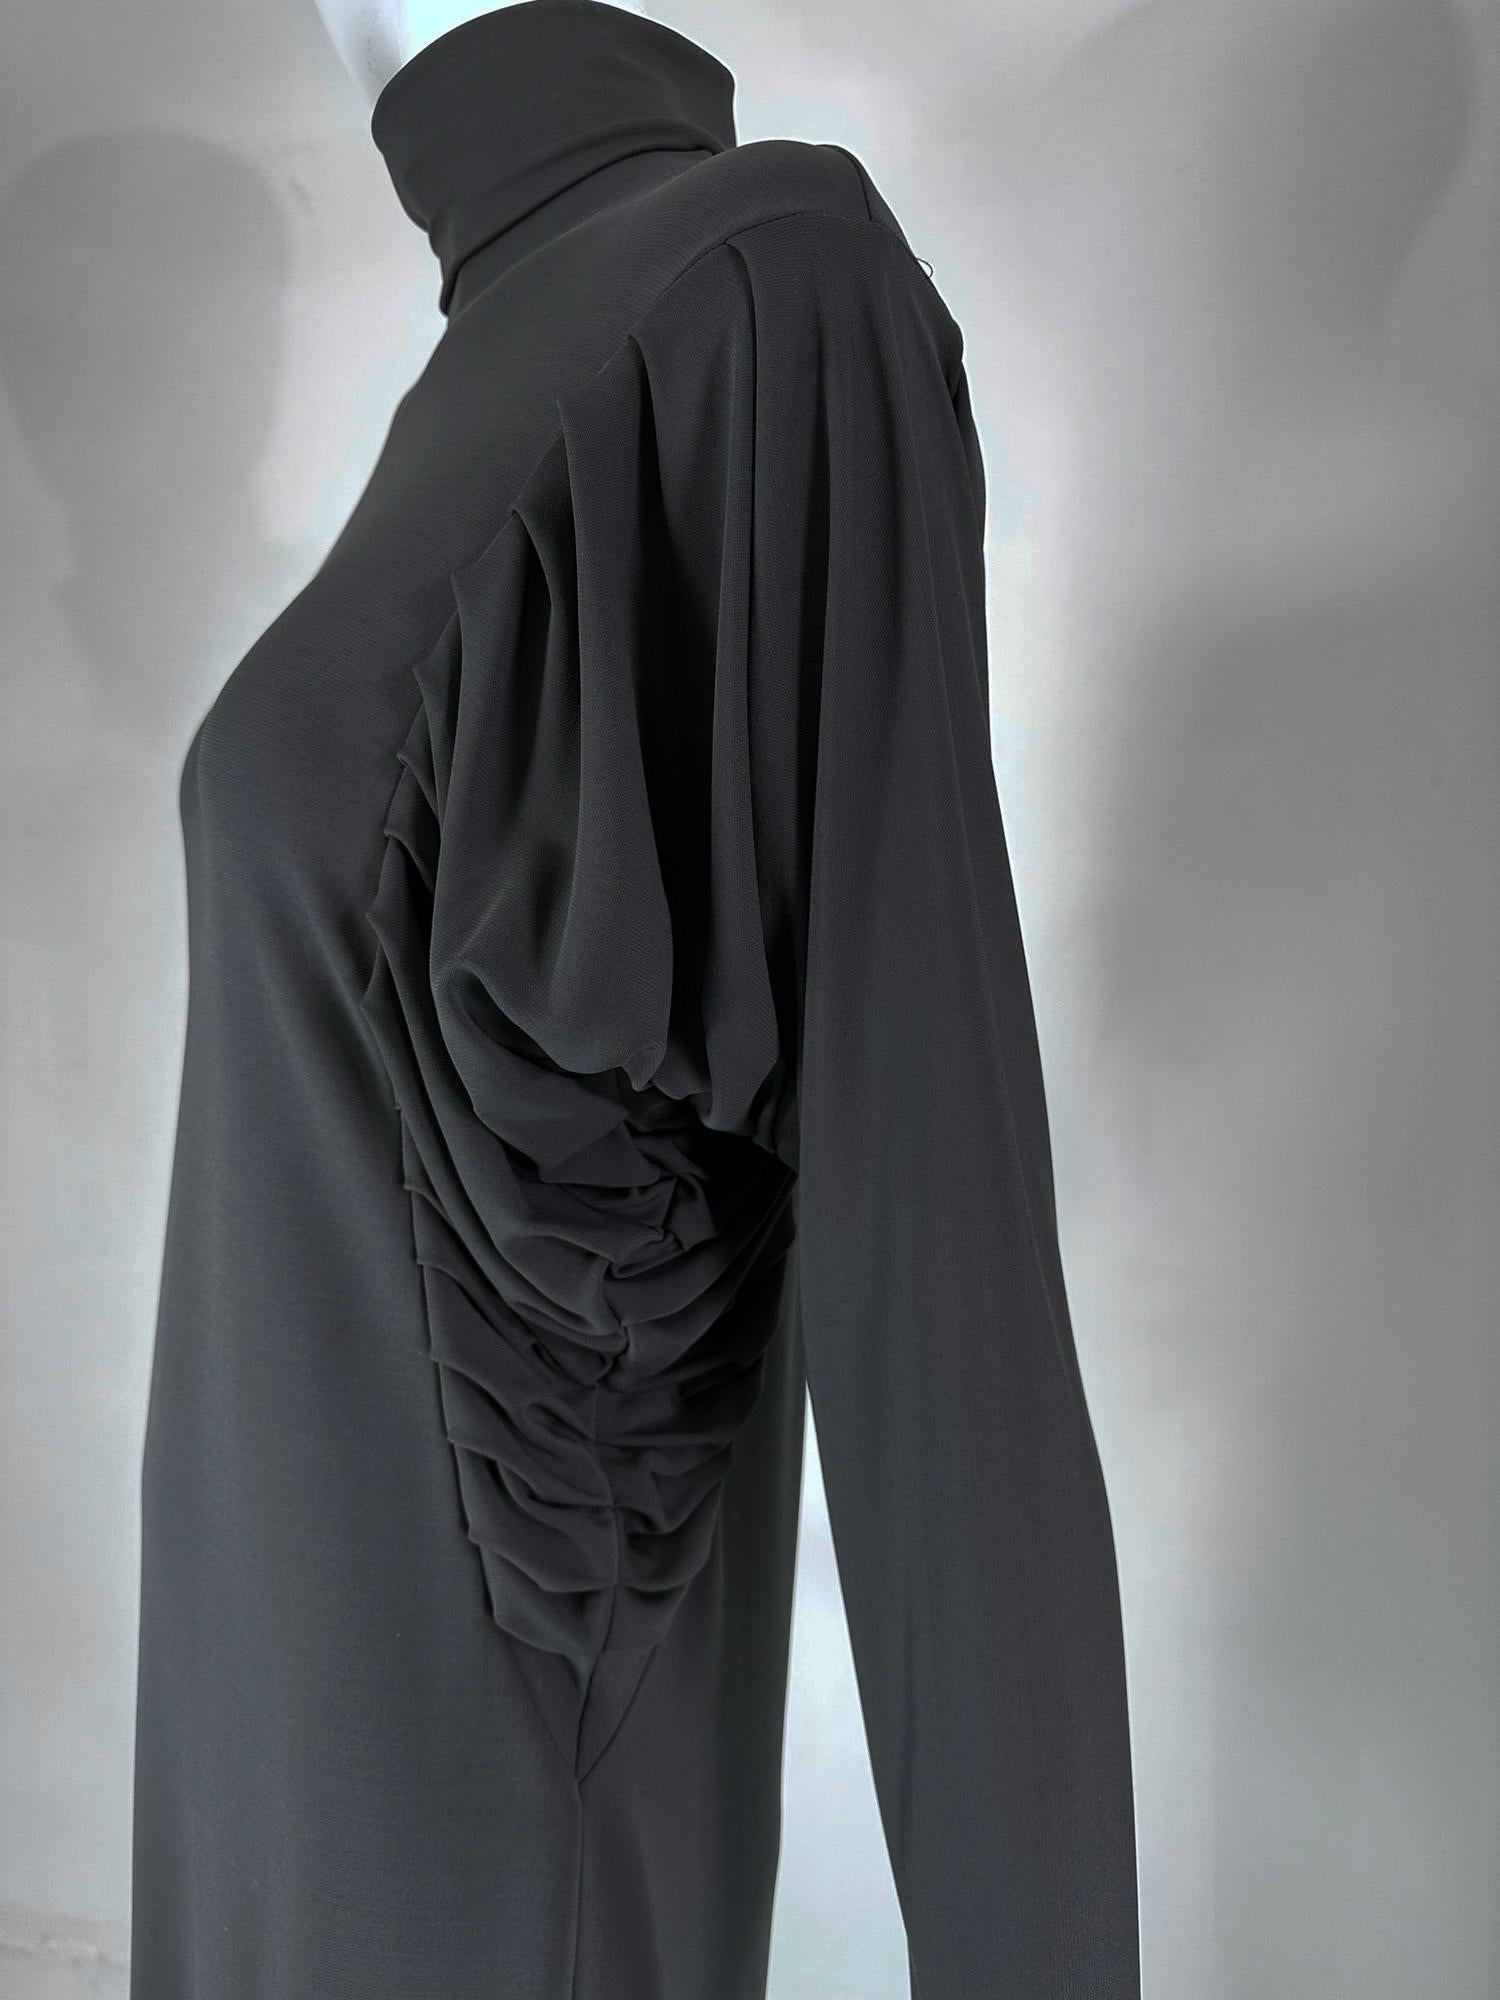 Fendi Silky Black Jersey Pleated Bat Wing Turtle Neck Dress 40 For Sale 8